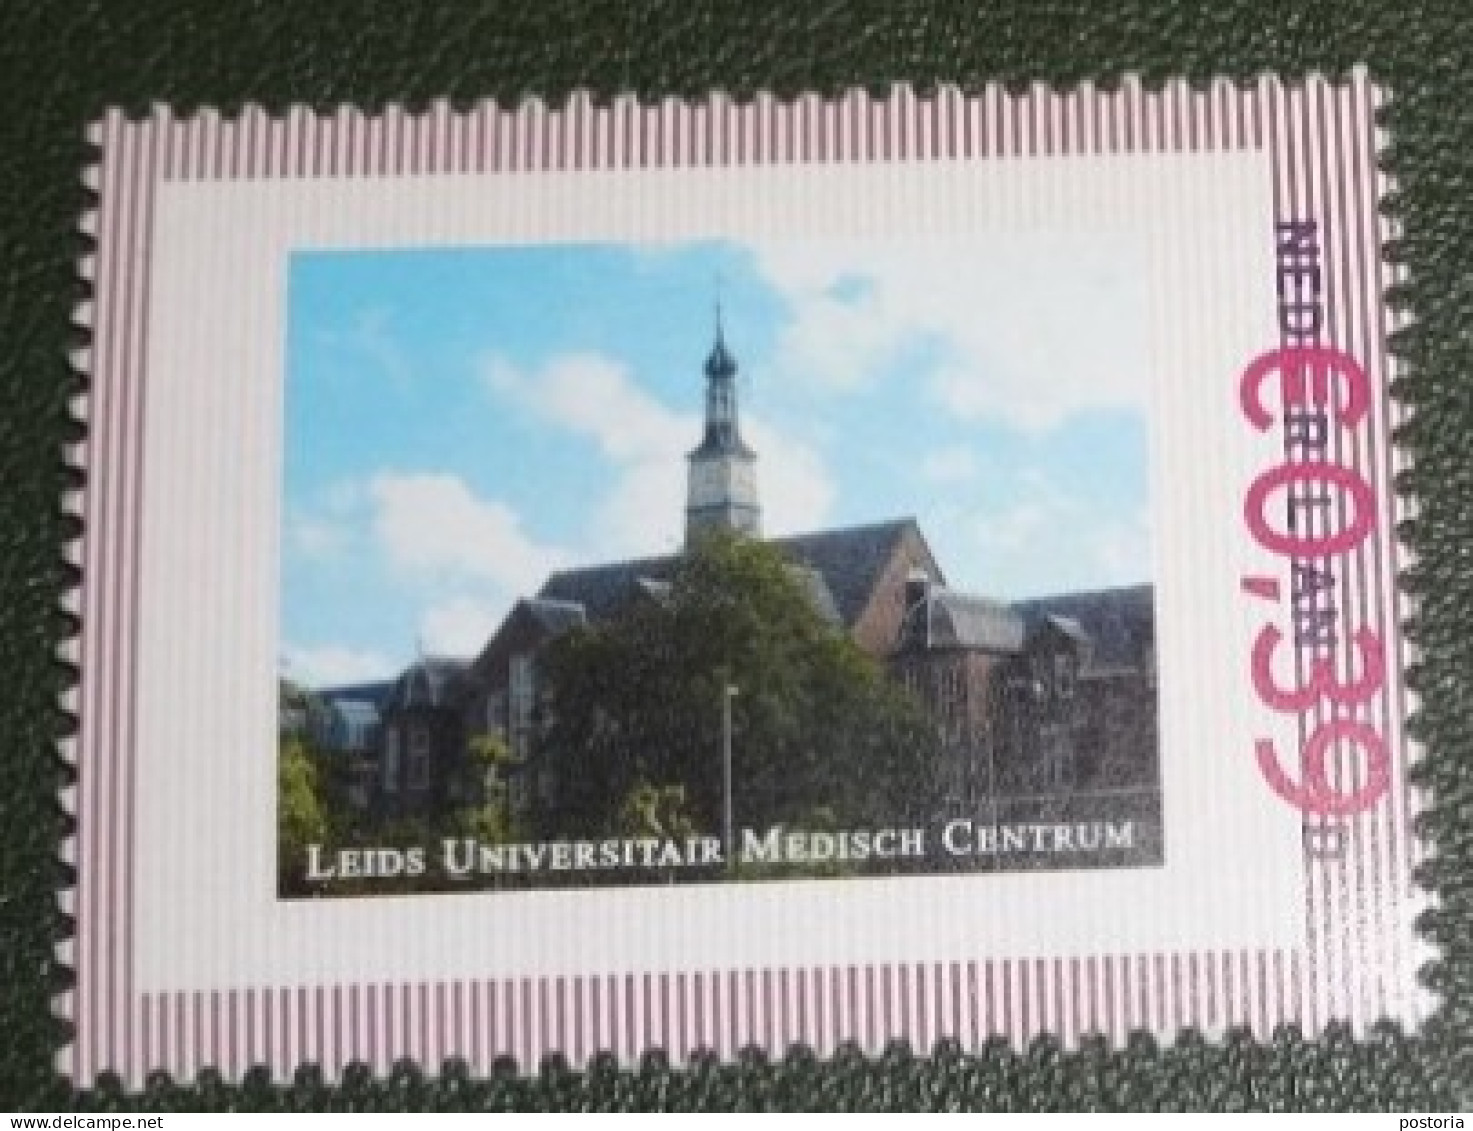 Nederland - NVPH - Persoonlijke - Postfris - MNH - Leids Universitair Medisch Centrum - LUMC - Persoonlijke Postzegels